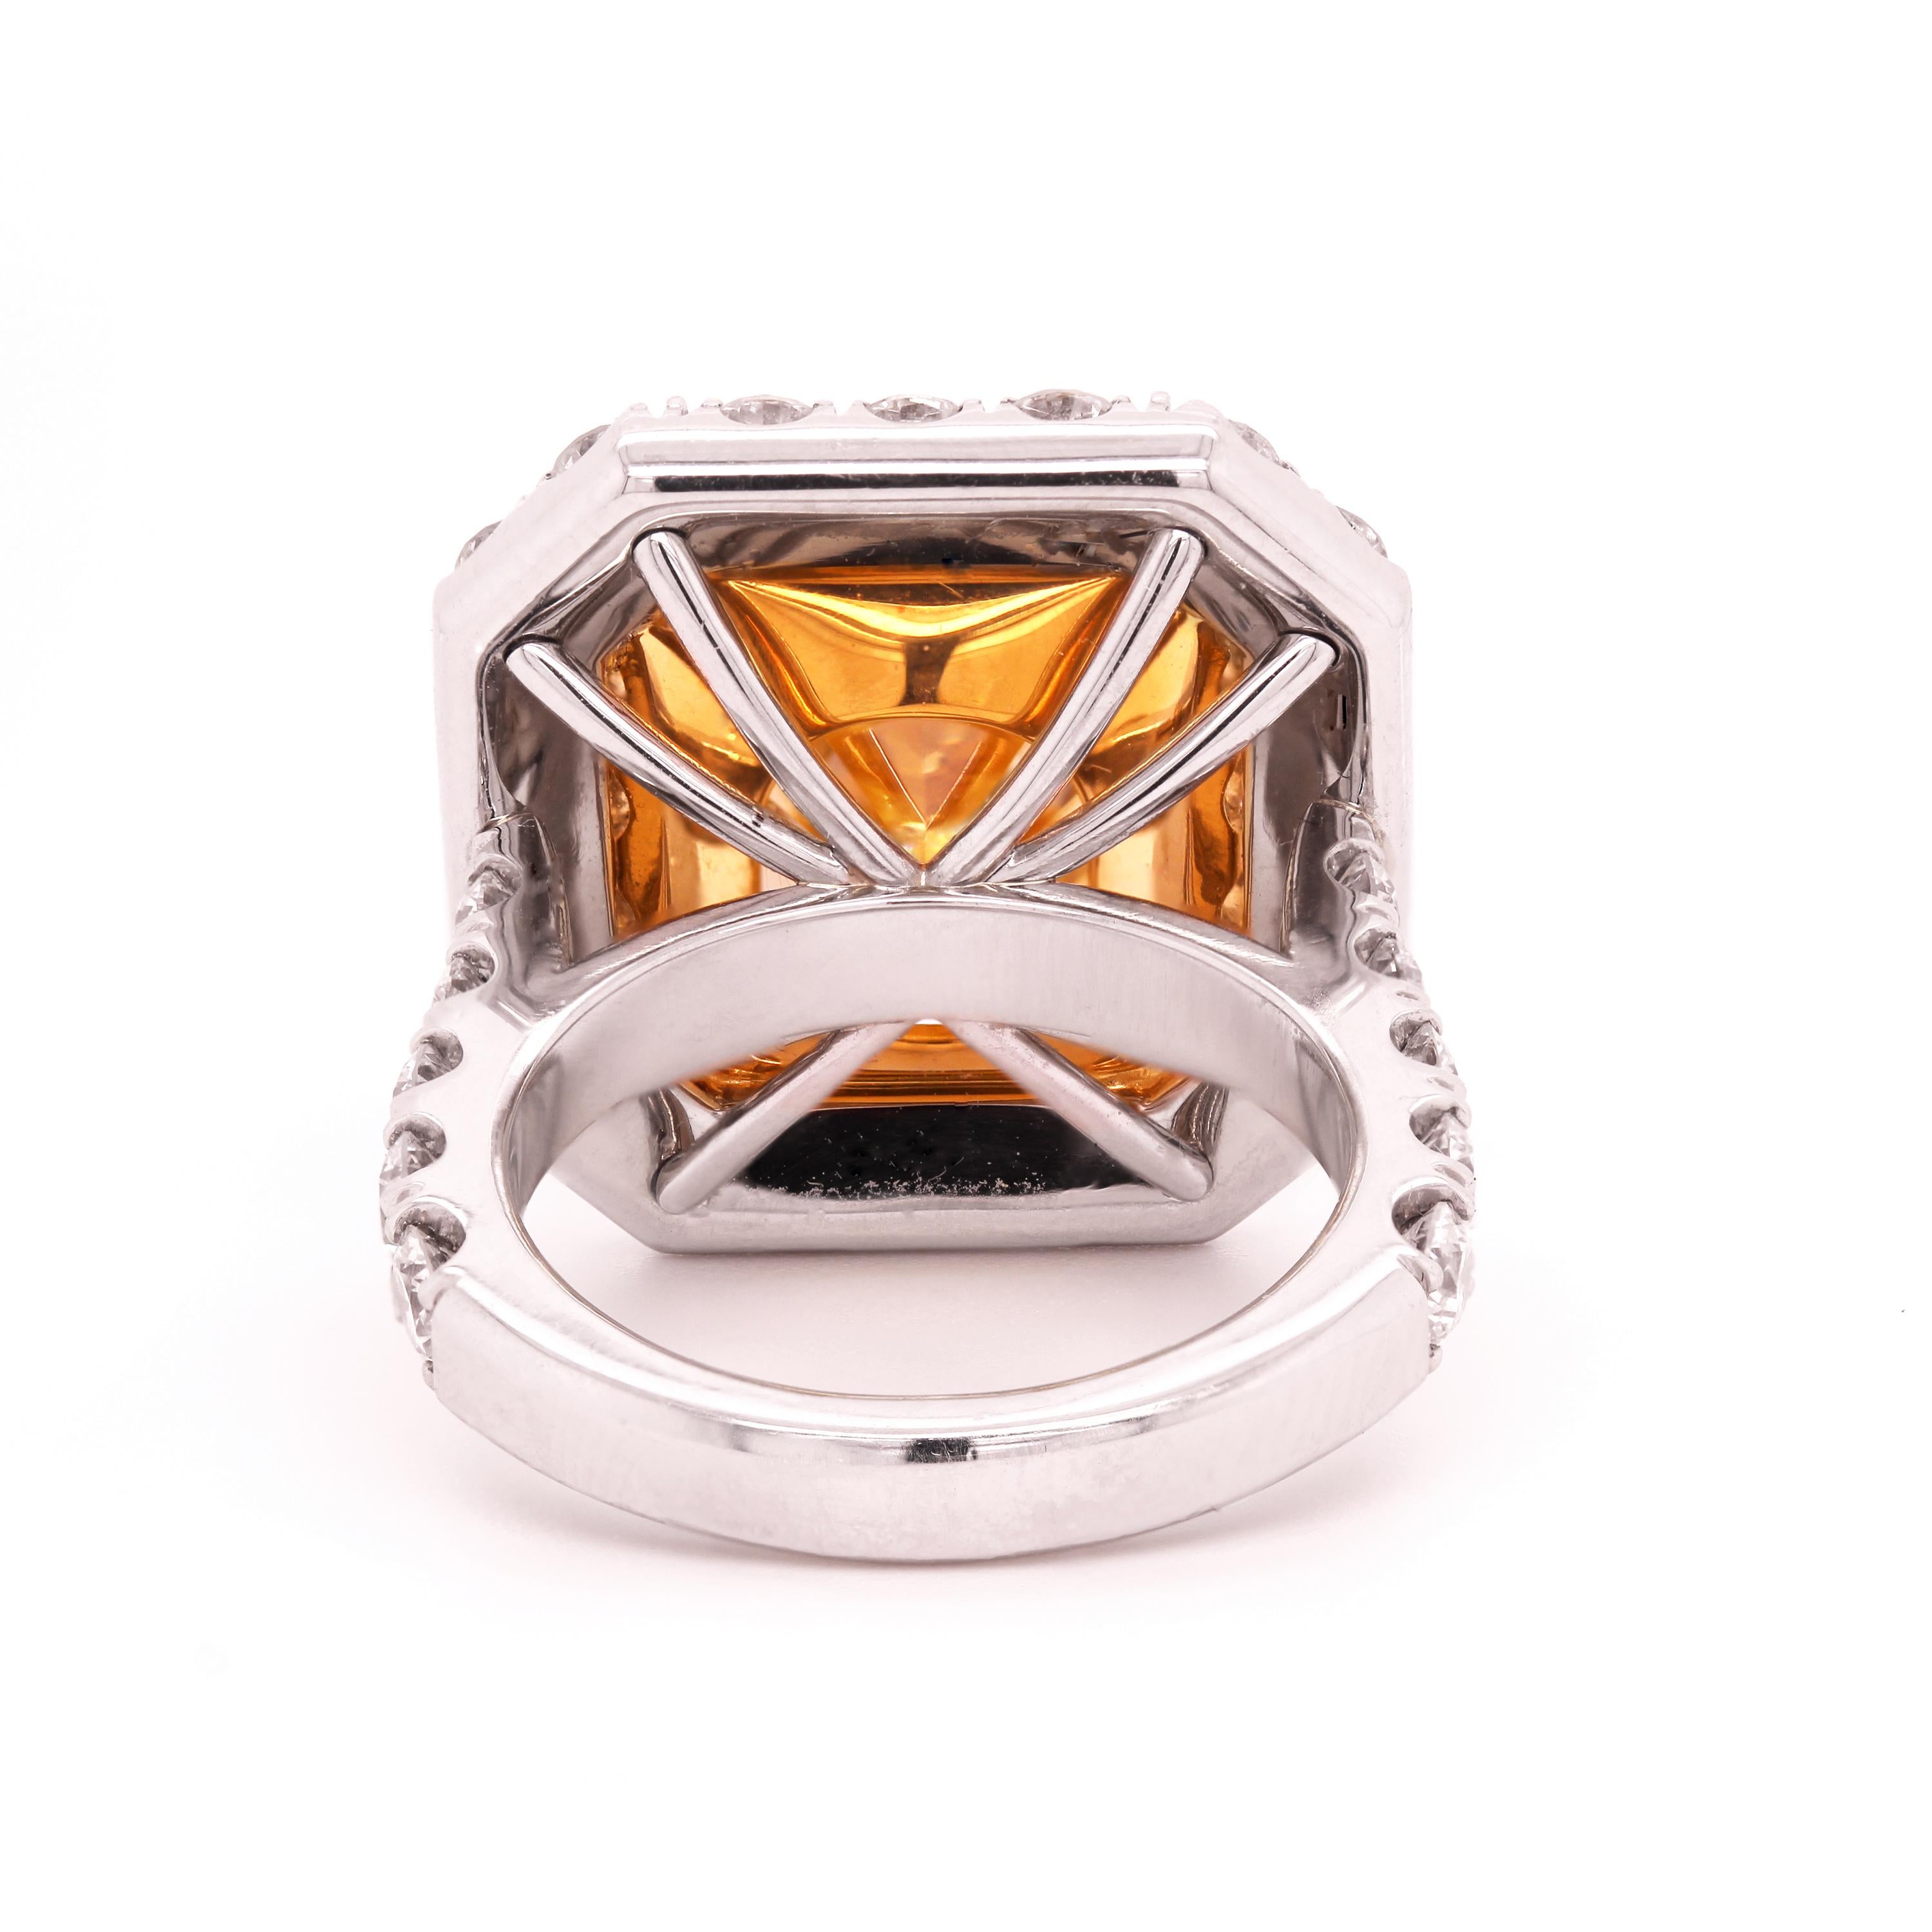 GIA-zertifizierter 11,22 Karat strahlender, intensiv gelber Diamantring (Radiantschliff) im Angebot